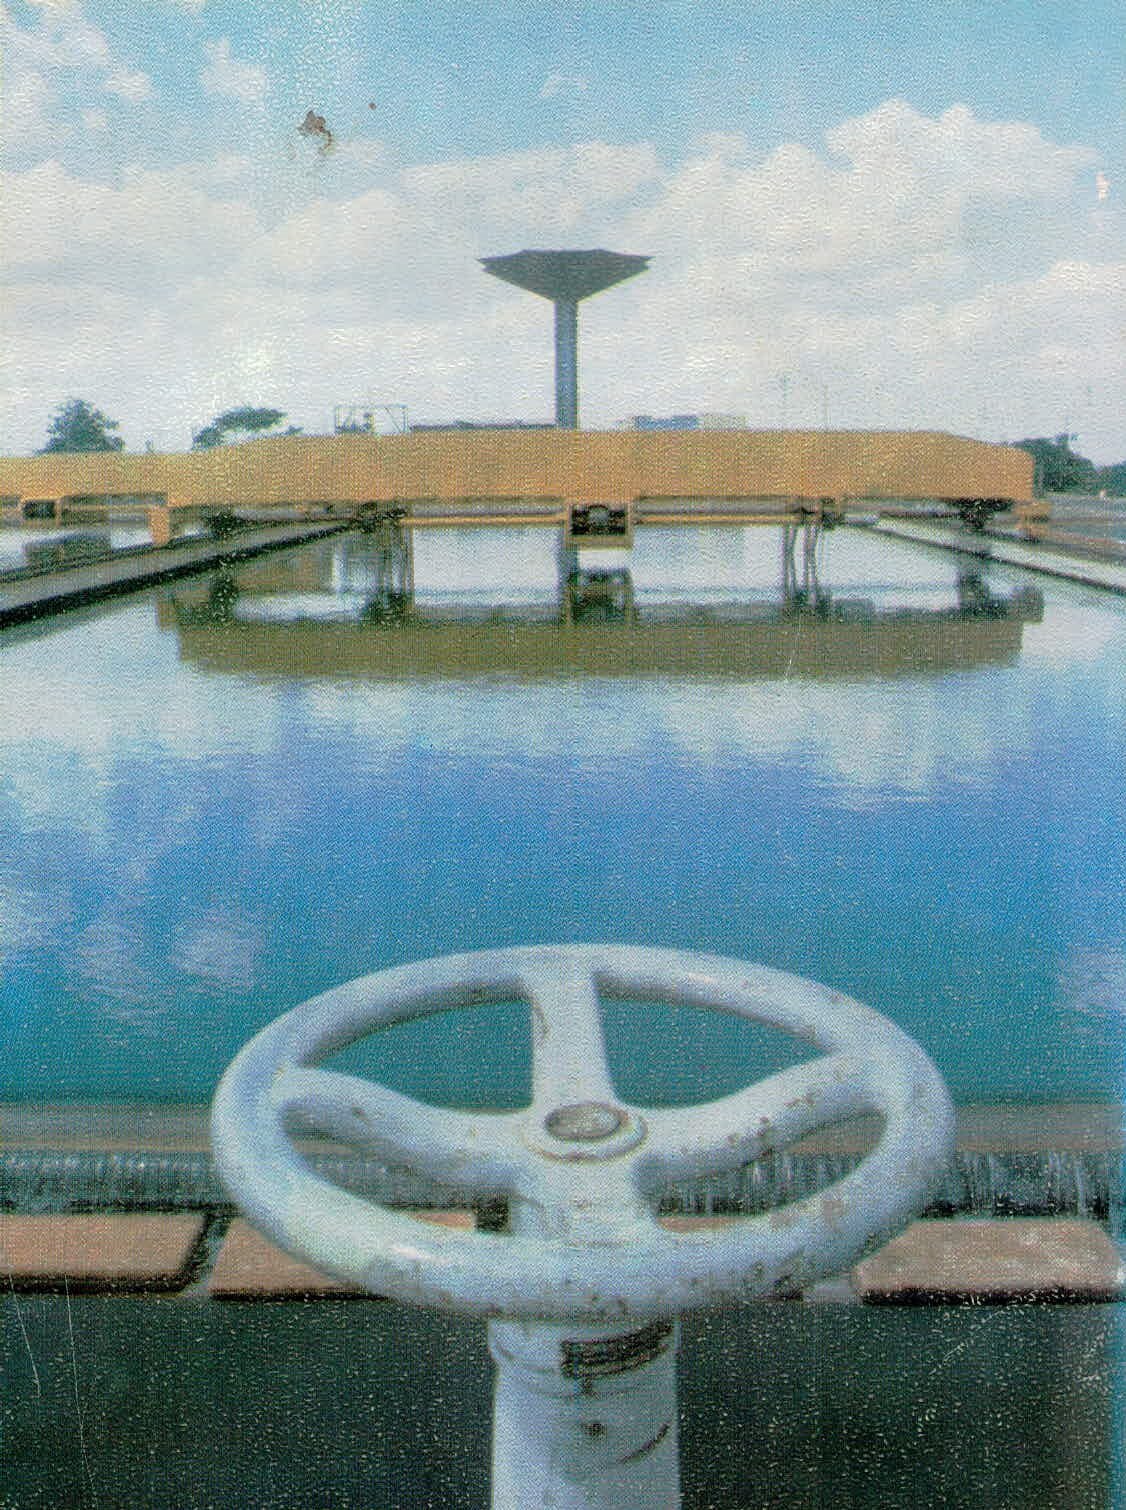 Estação de tratamento e caixa d’água da Codemar - 1979